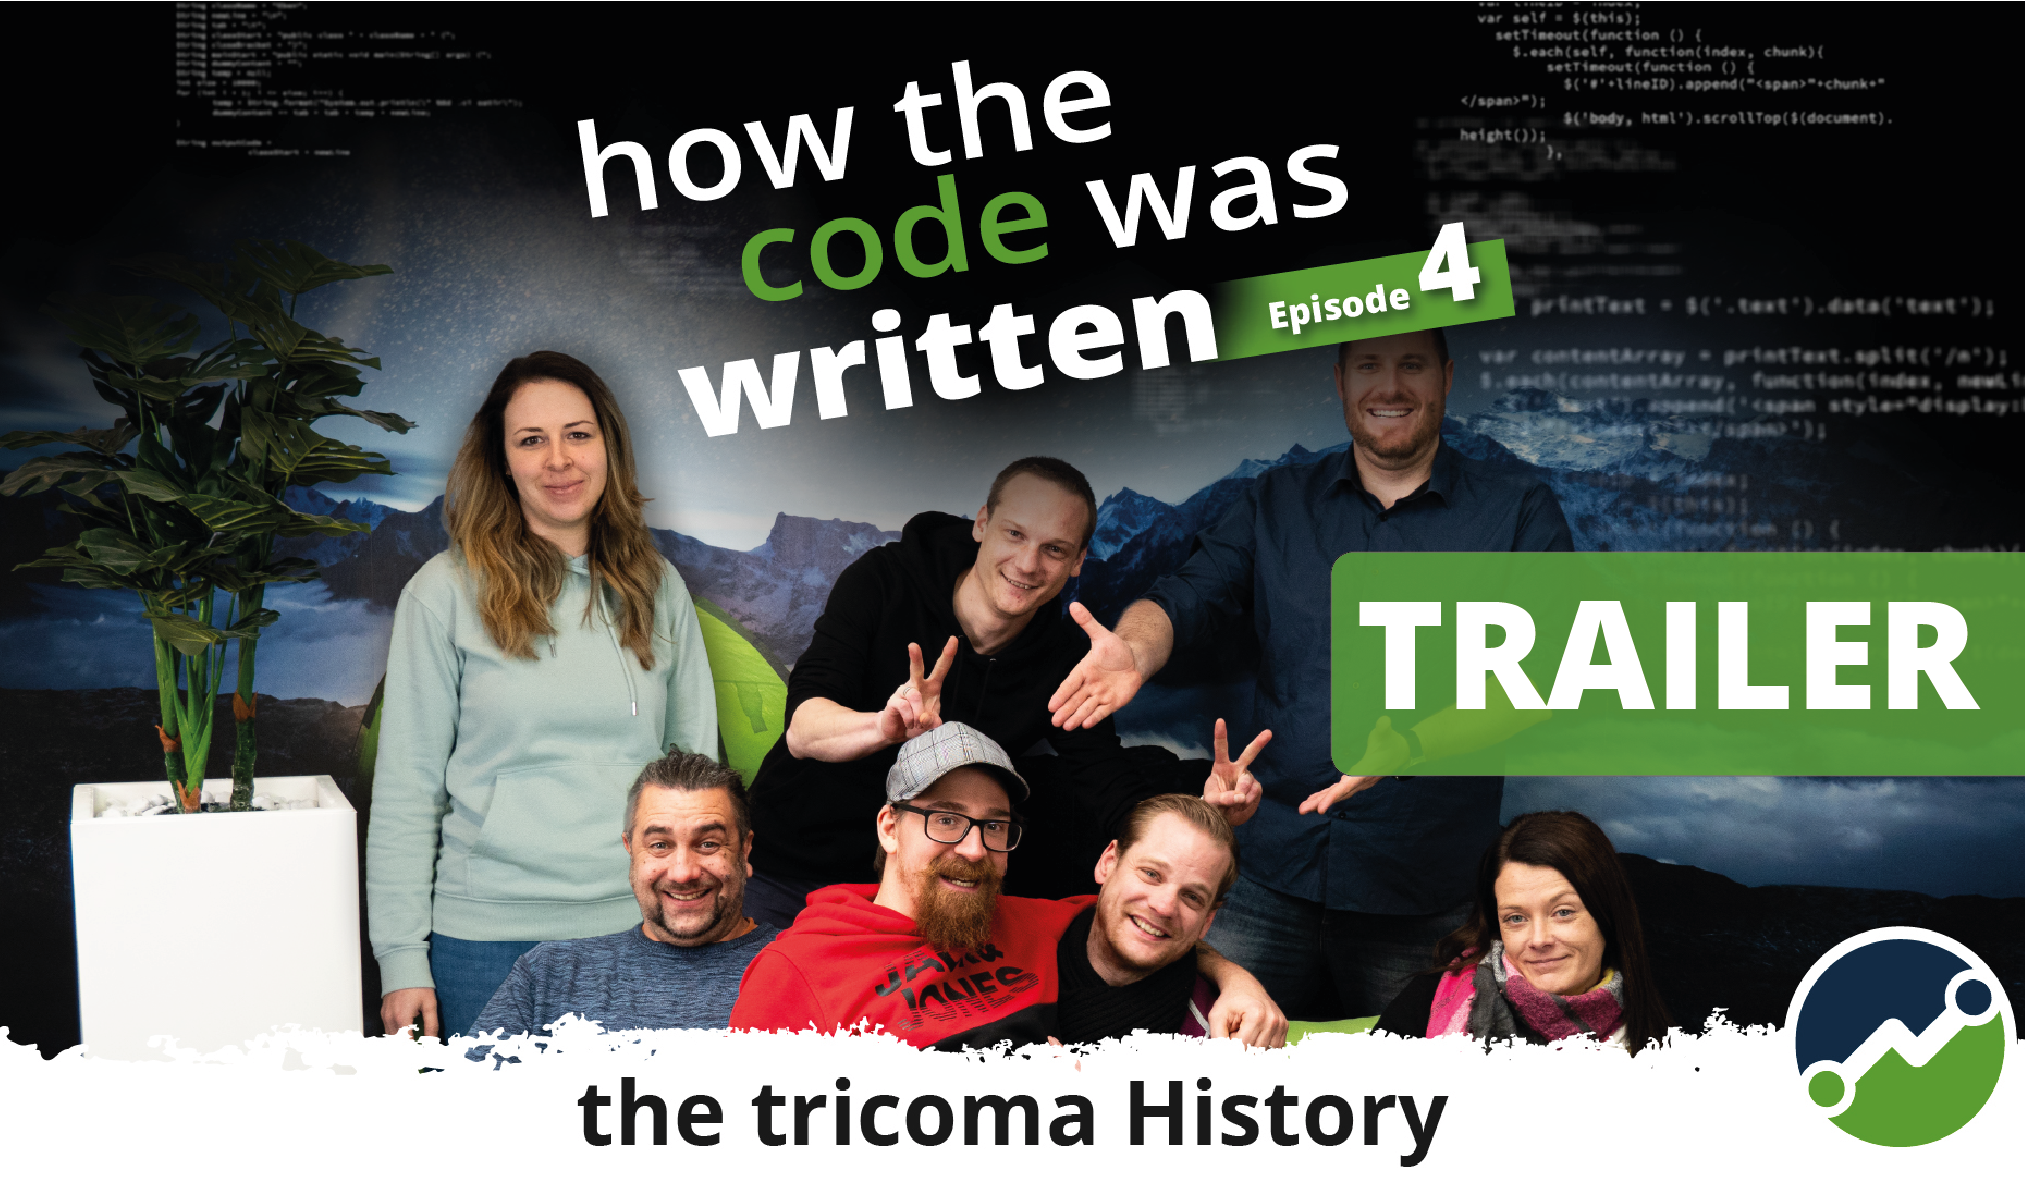 Der Trailer fr Folge 4 von How the code was written zeigt tricoma vor dem Wendepunkt: Aufstieg oder Abstieg?